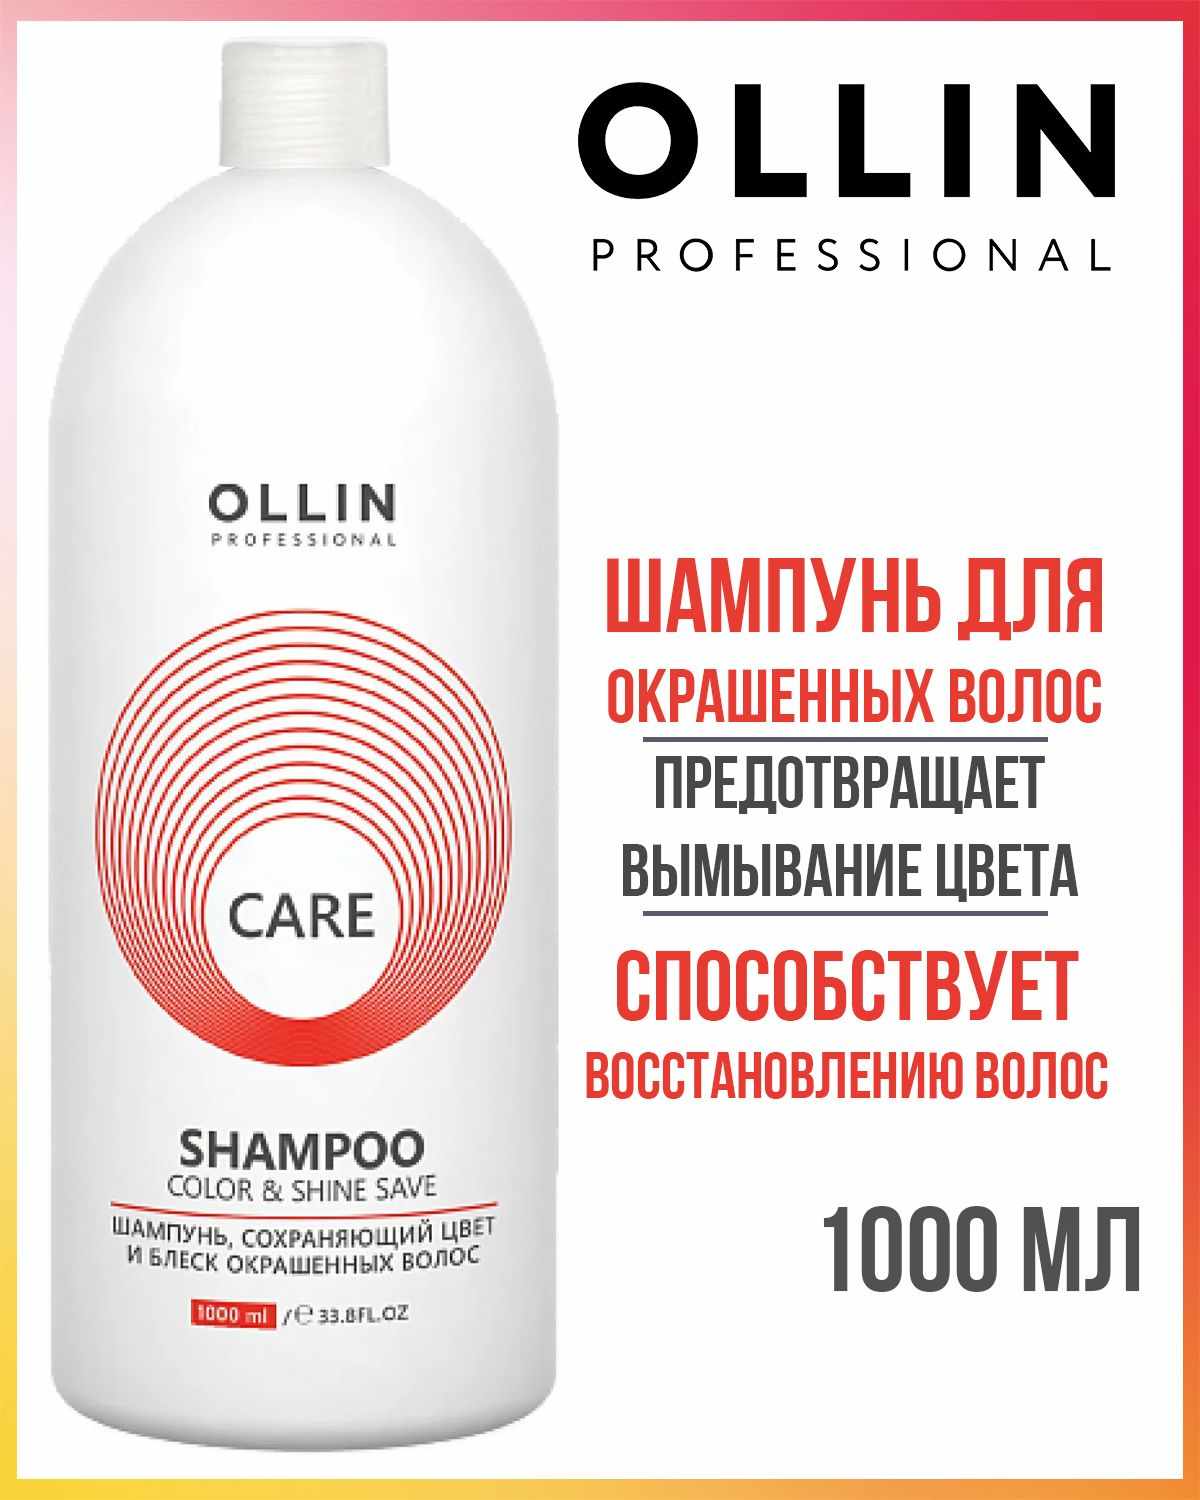 Шампунь CARE для окрашенных волос Сolor & Shine save, 1000мл